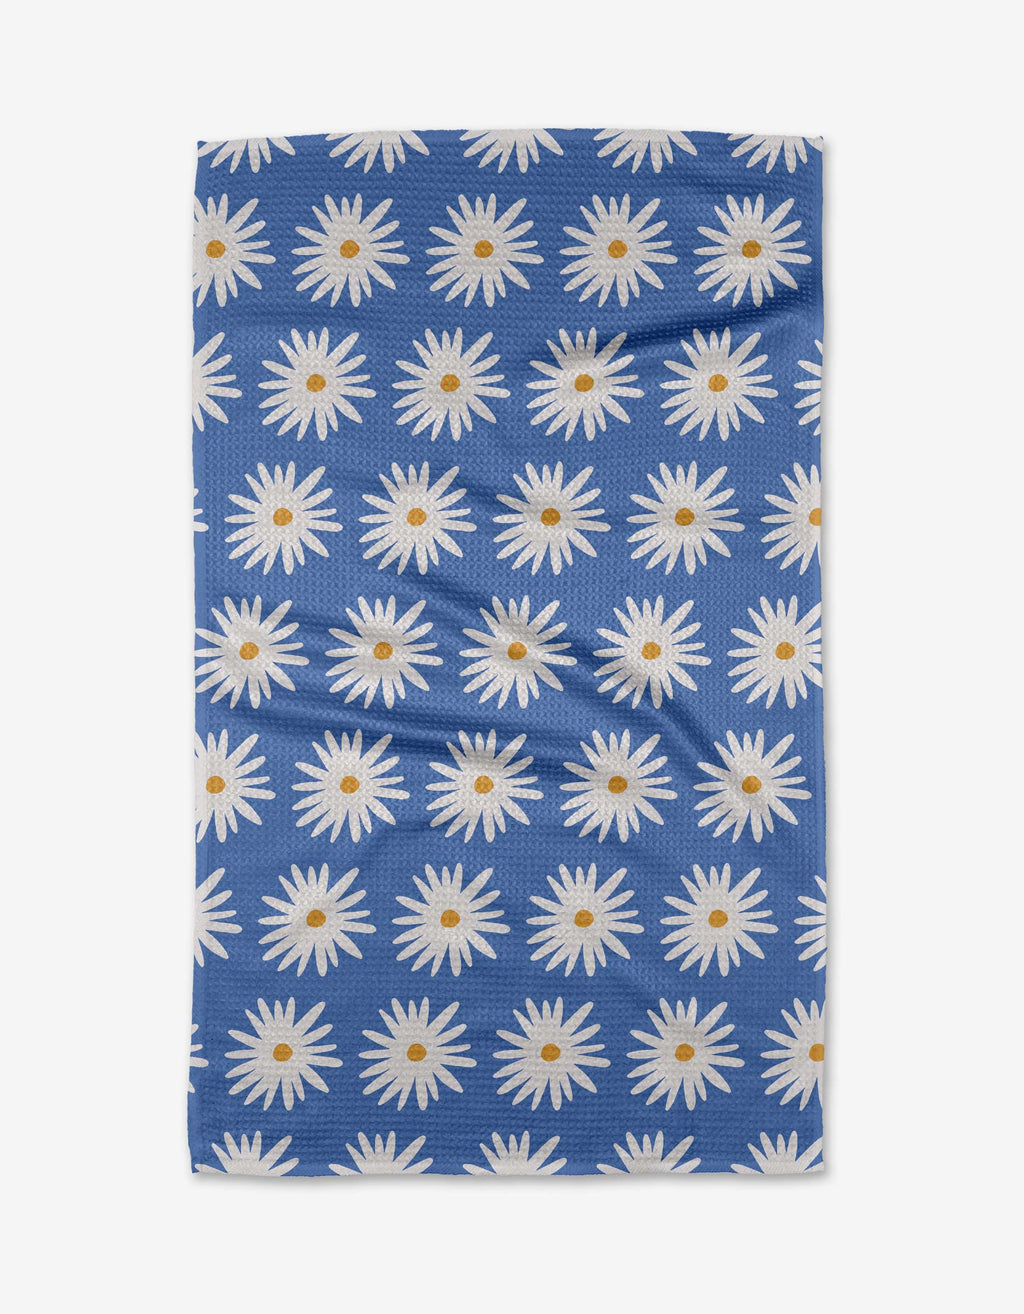 Geometry - Blue Daisies Tea Towel